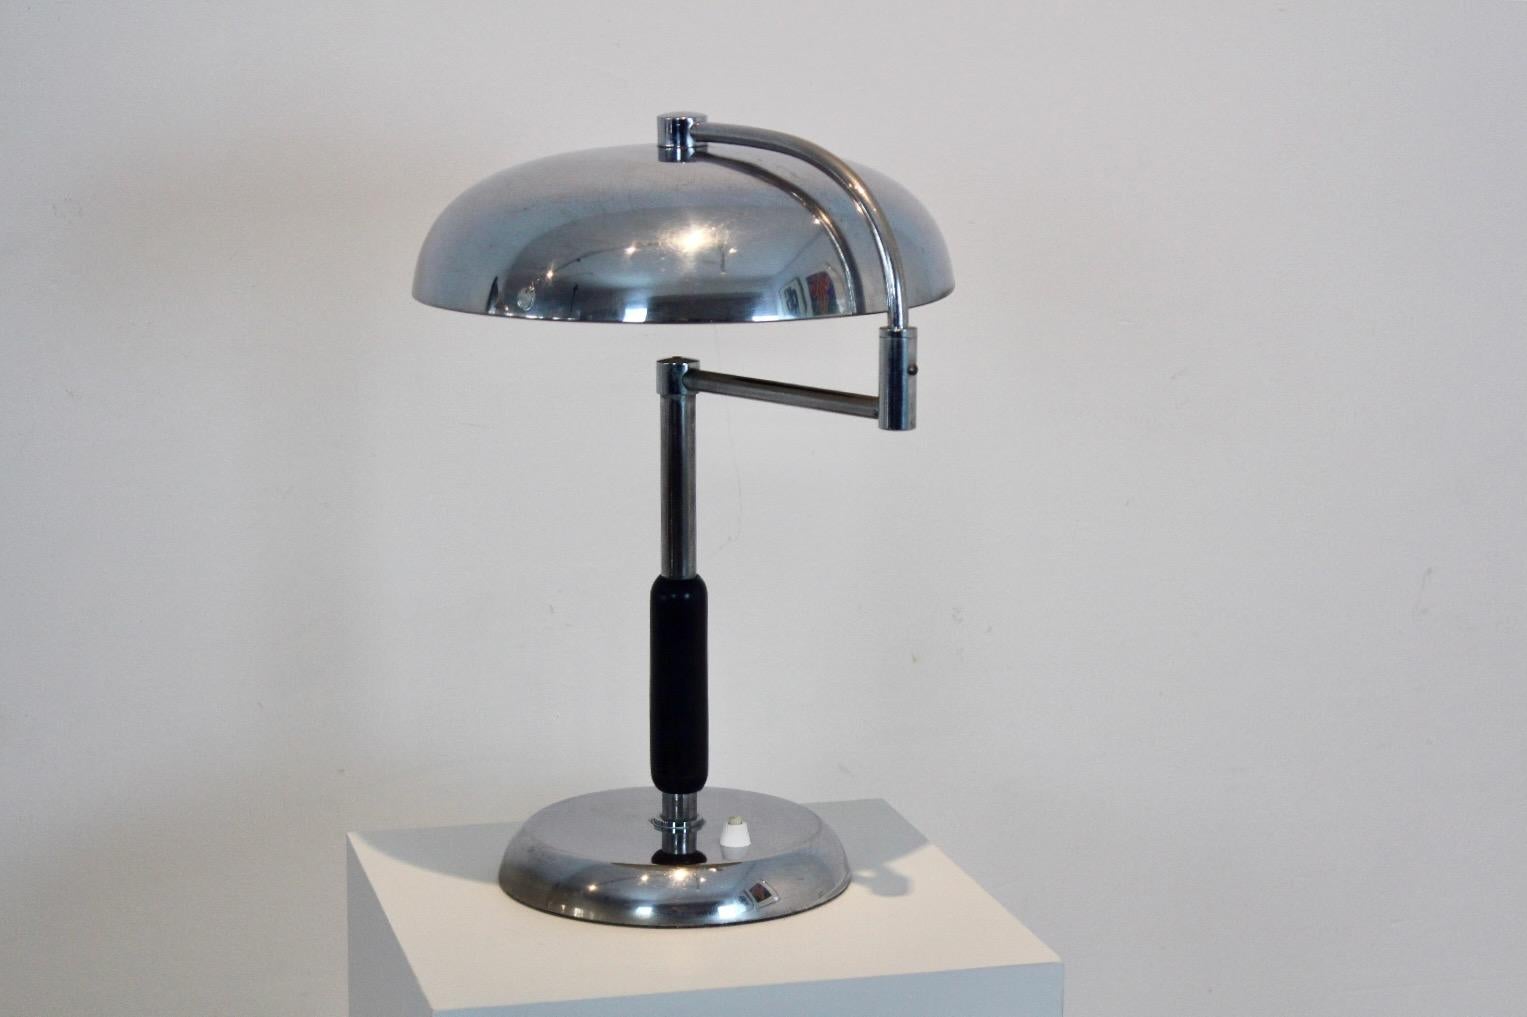 Die Maison Desny Schreibtischlampe ist ein klassisches Beispiel für modernistisches Design aus den 1930er Jahren. Maison Desny war ein progressives Designstudio, das modernste, avantgardistische Kunstwerke schuf und für seine innovative Verwendung